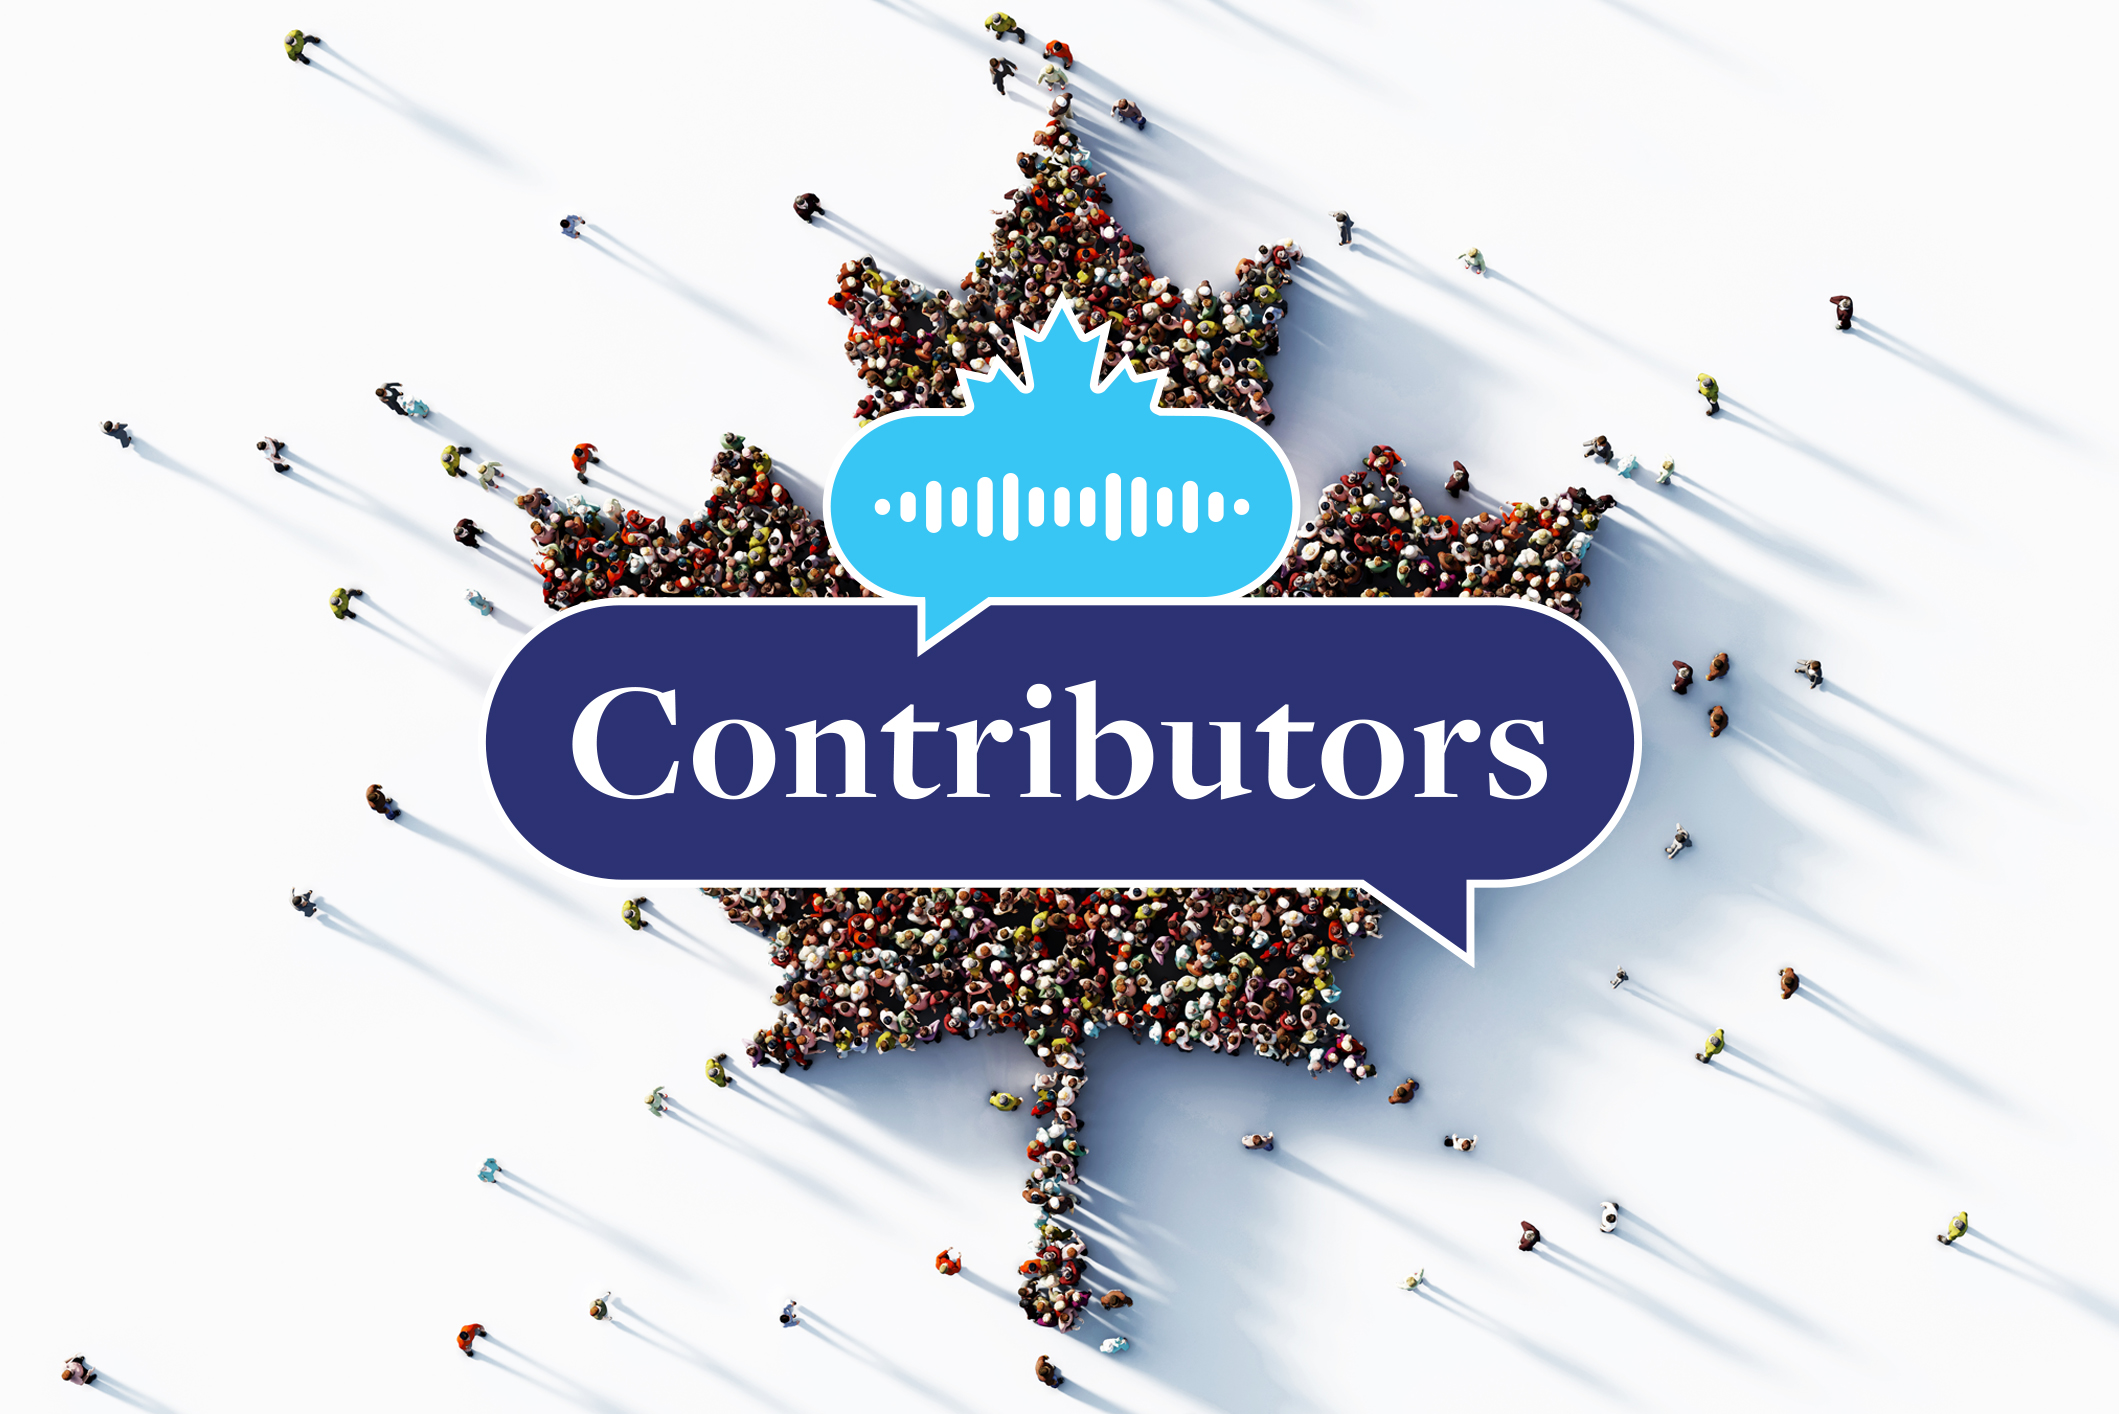 Logo de Contributors superposé sur une feuille d’érable composé d’un groupe de personnes